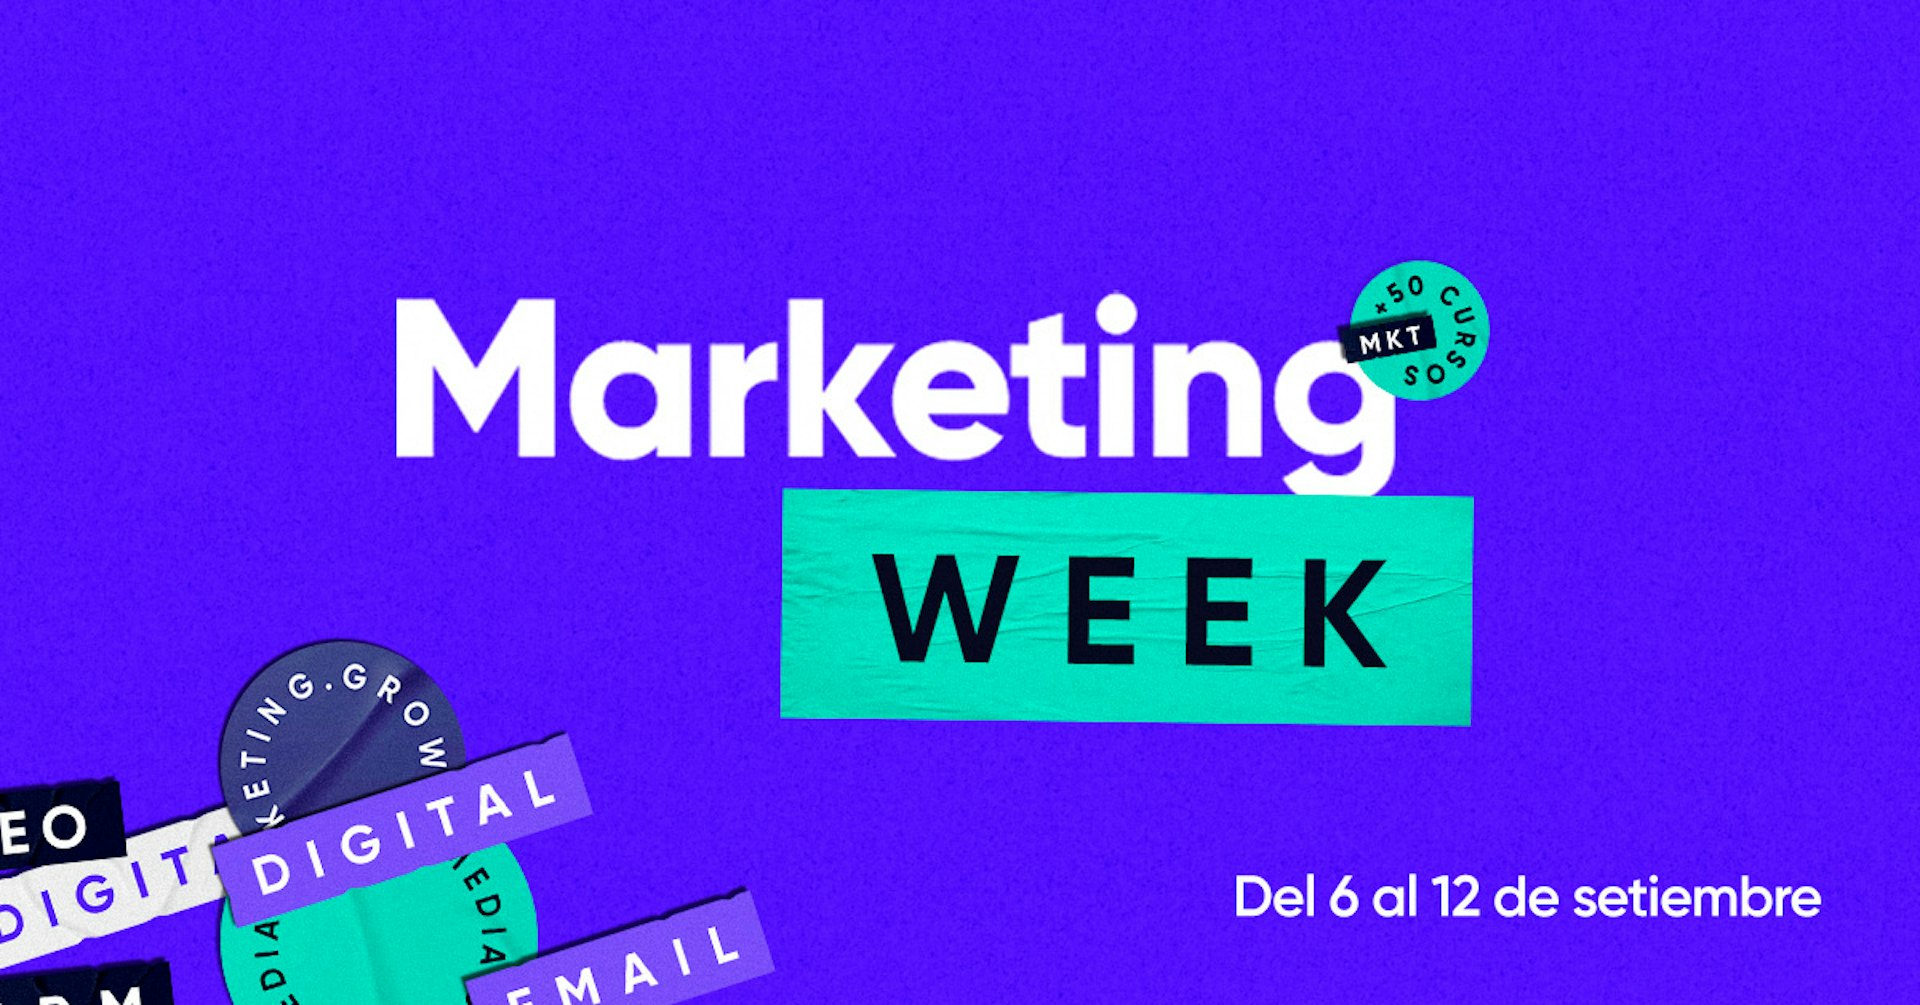 ¡Hoy empieza la Semana del Marketing en Crehana! Conoce todos los hacks que tenemos para ti